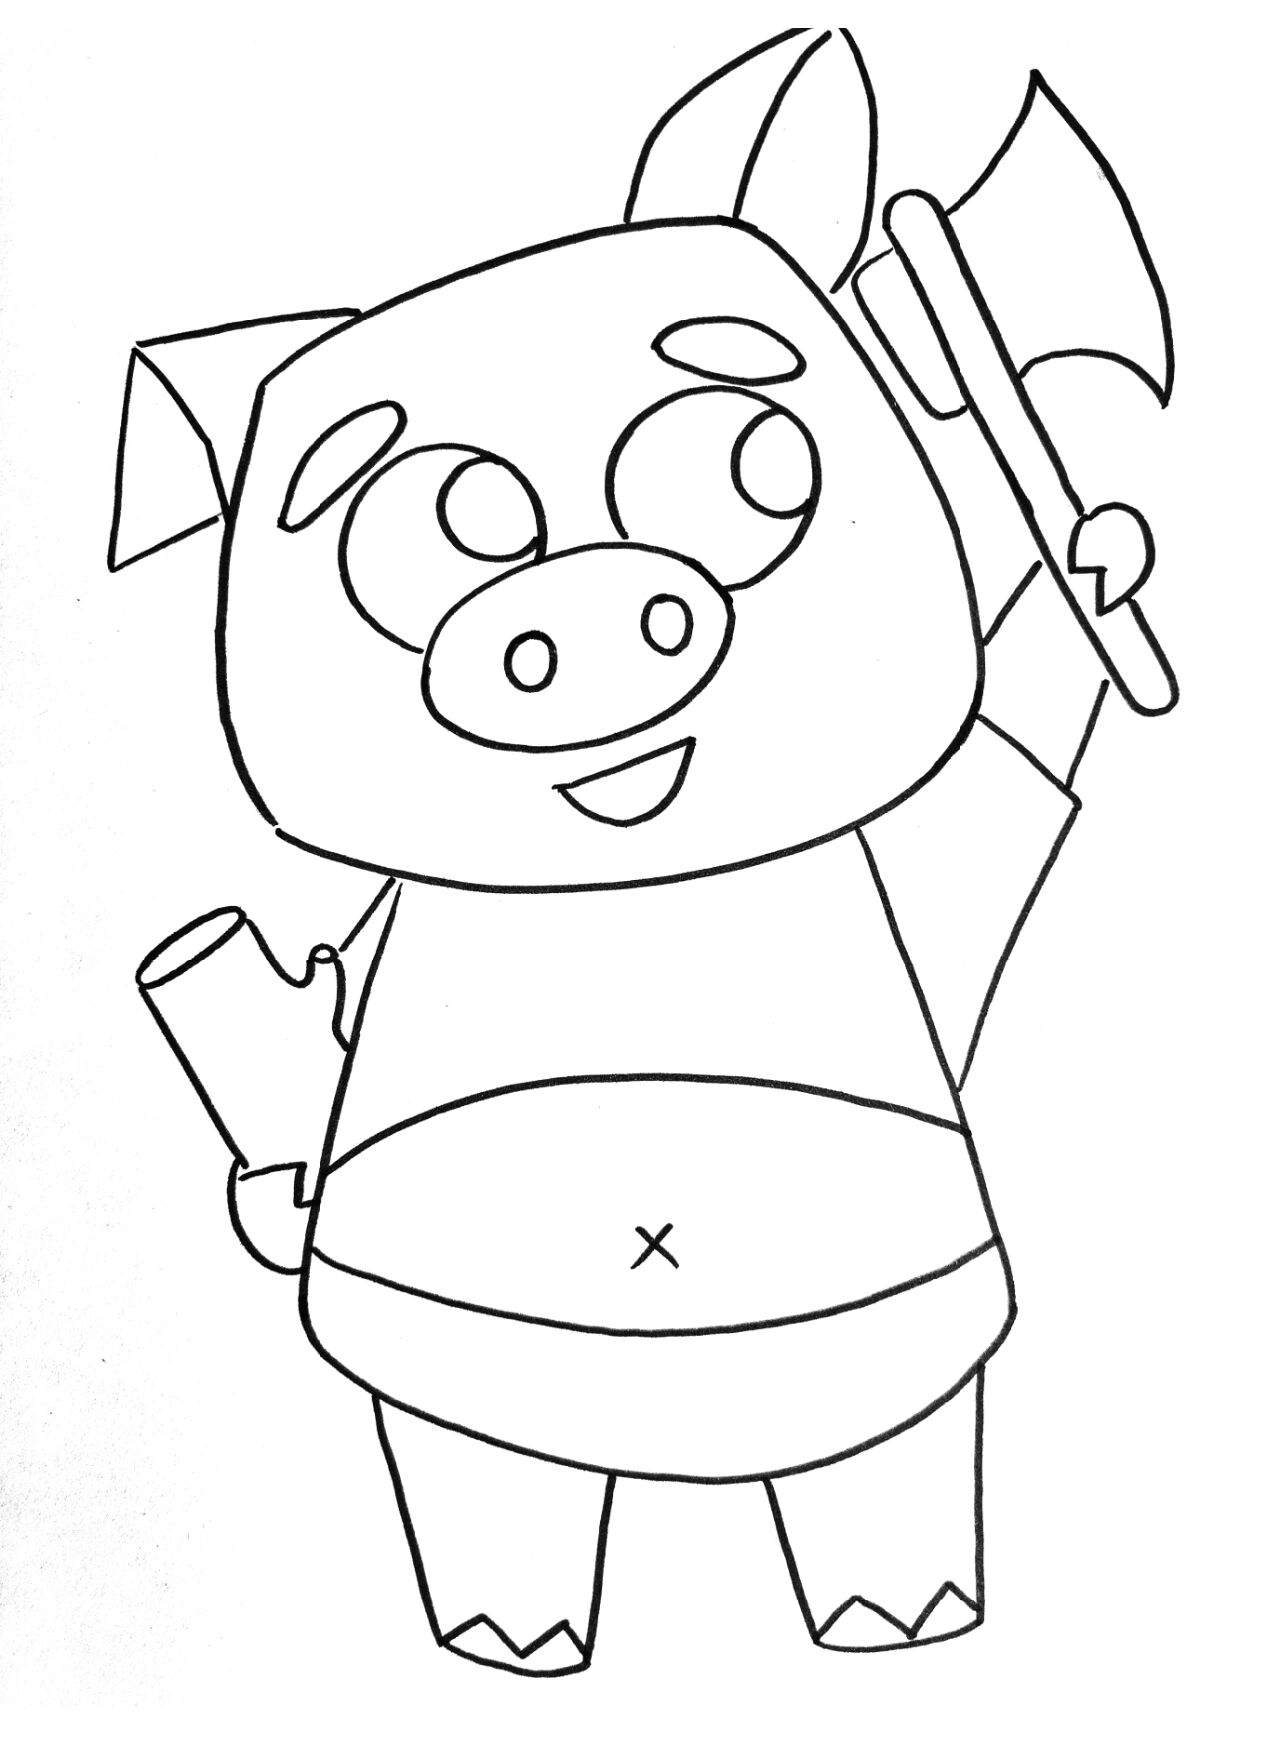 简笔画三只小猪盖房子图片